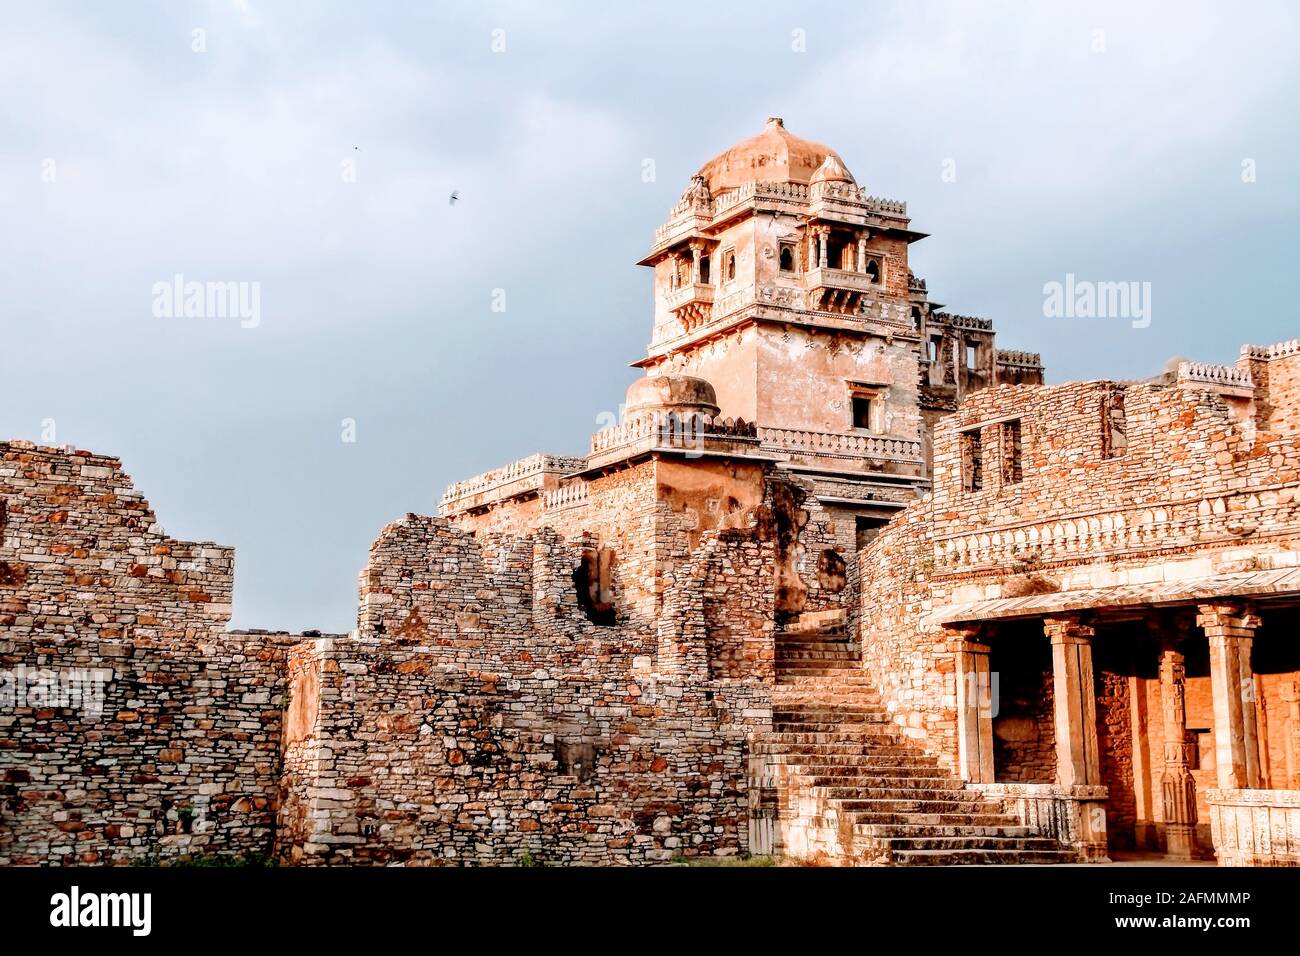 Chittorgarh Fort es una de las mayores fortalezas en la India. Es un sitio del Patrimonio Mundial de la UNESCO.La fortaleza fue la capital de Mewar. Foto de stock